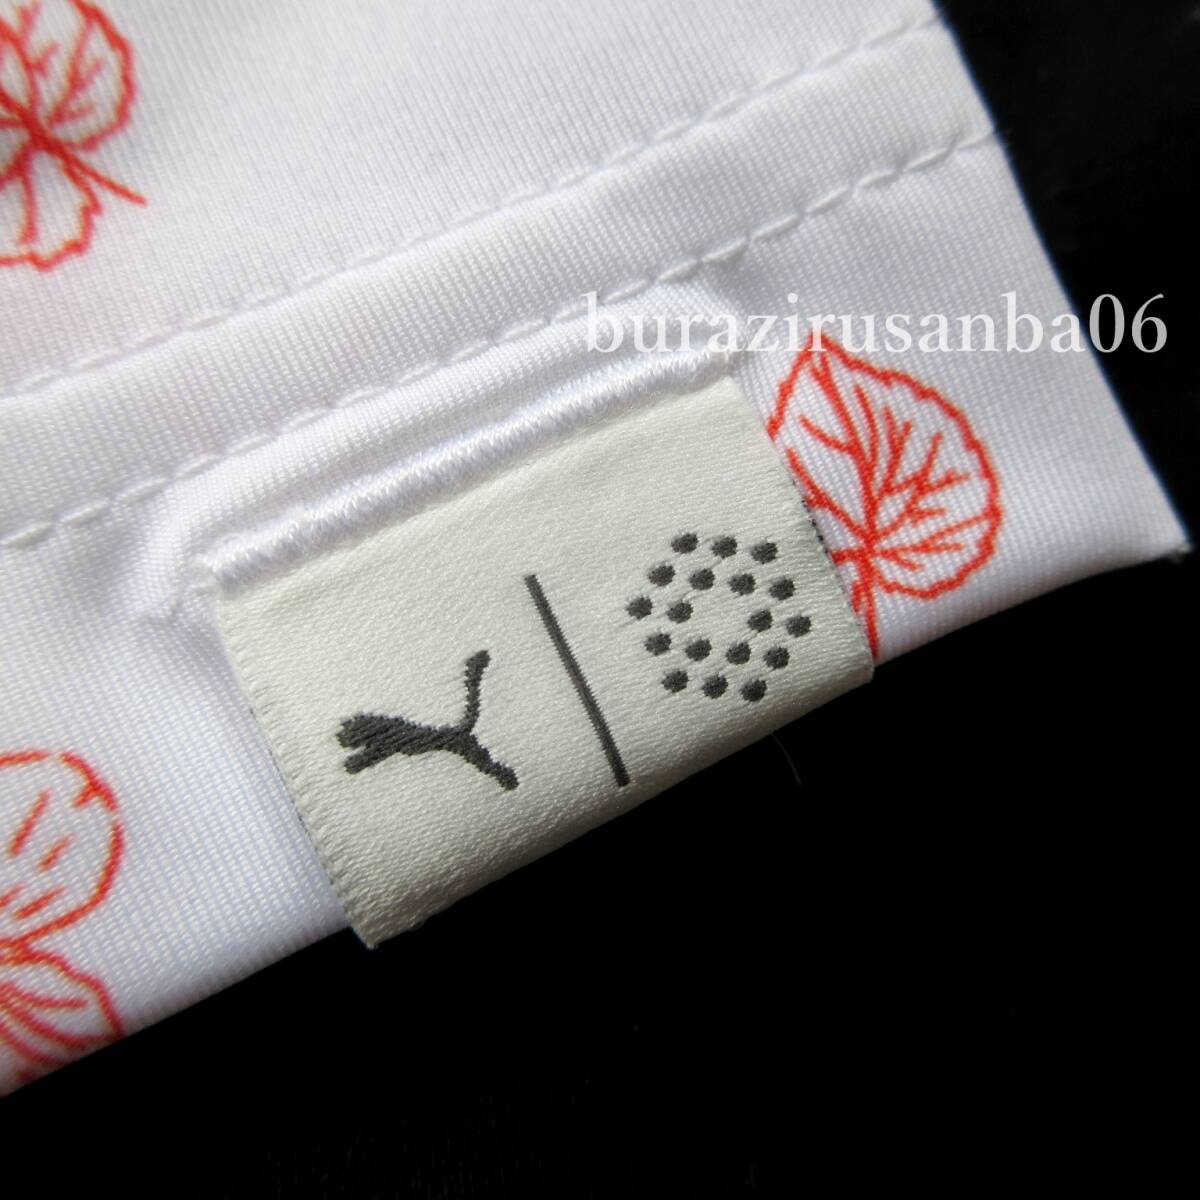  мужской L* не использовался обычная цена 9,900 иен PUMA GOLF Puma рубашка-поло с коротким рукавом общий рисунок .. кондиционер эффект UV эффект SHWDAN материалы весна лето Golf одежда 